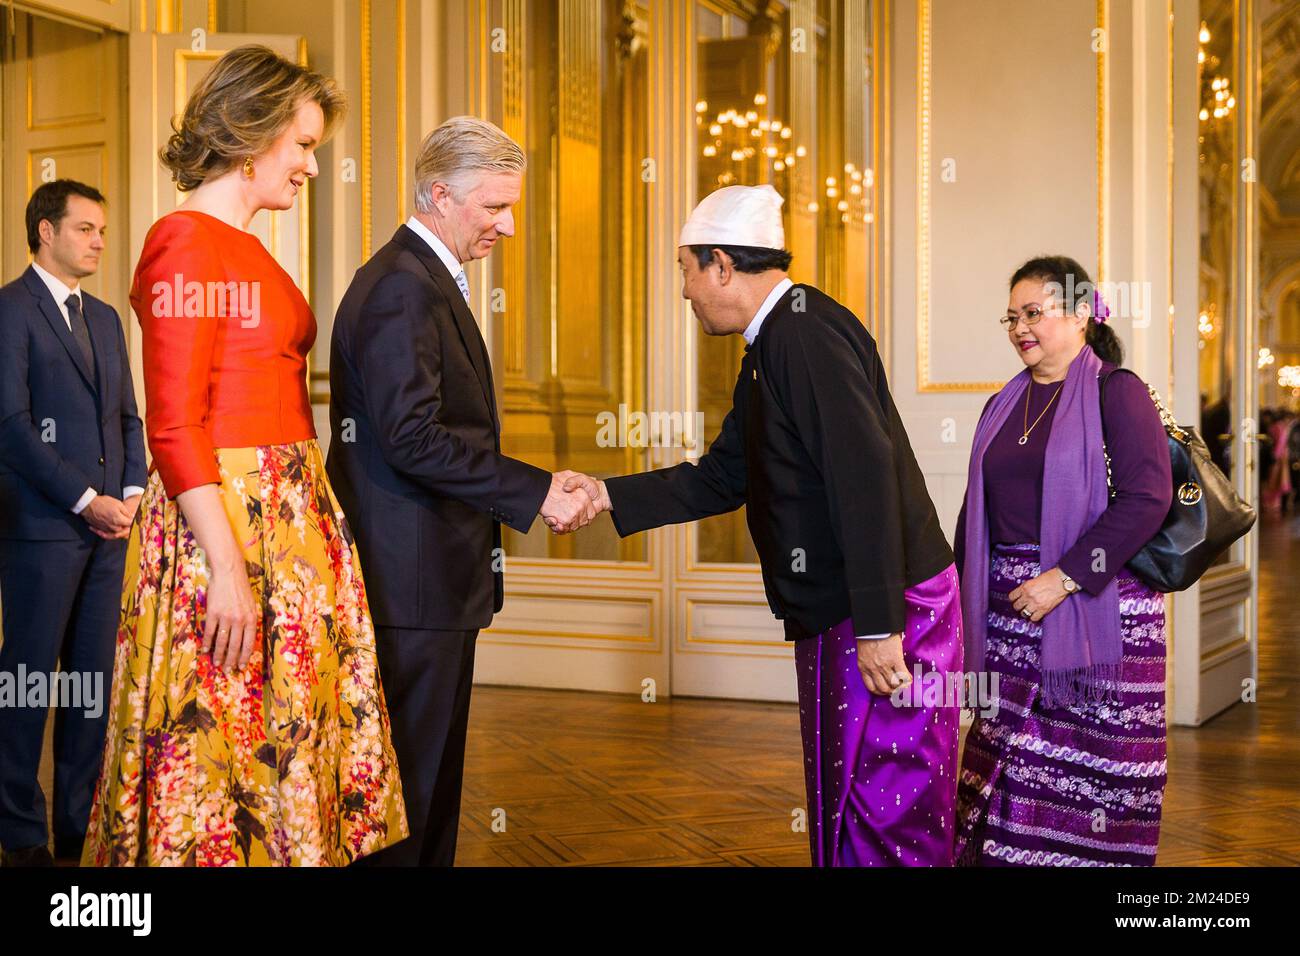 Paw Lwin Sein, ambasciatore del Myanmar nella foto durante un ricevimento di Capodanno organizzato dalla Famiglia reale per i capi delle missioni diplomatiche in Belgio, presso il Palazzo reale di Bruxelles, giovedì 12 gennaio 2017. FOTO DI BELGA JAMES ARTHUR GEKIERE Foto Stock